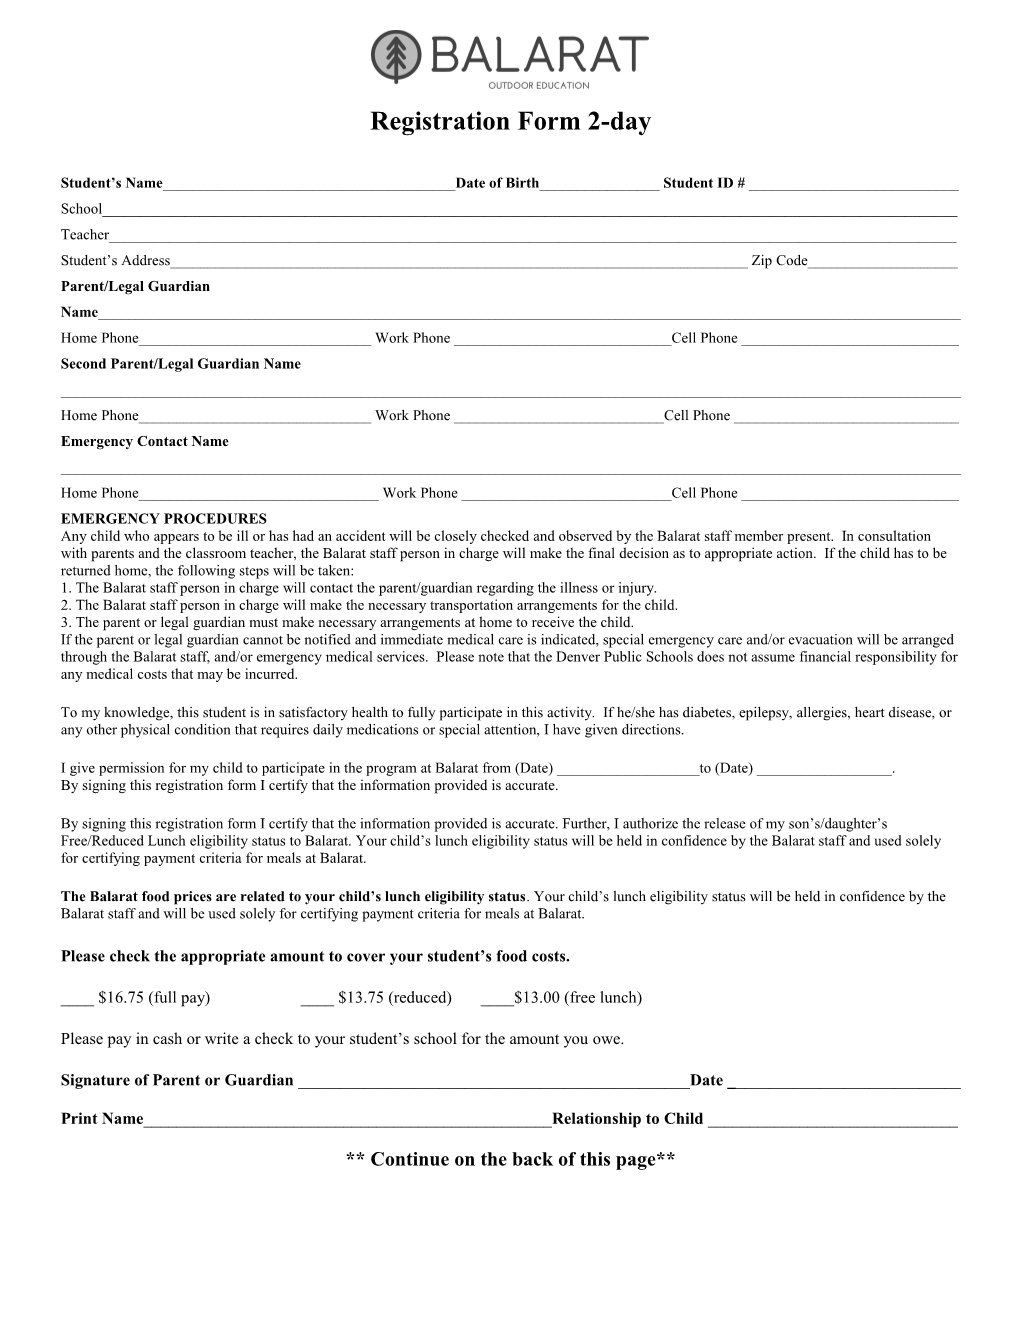 Registration Form 2-Day